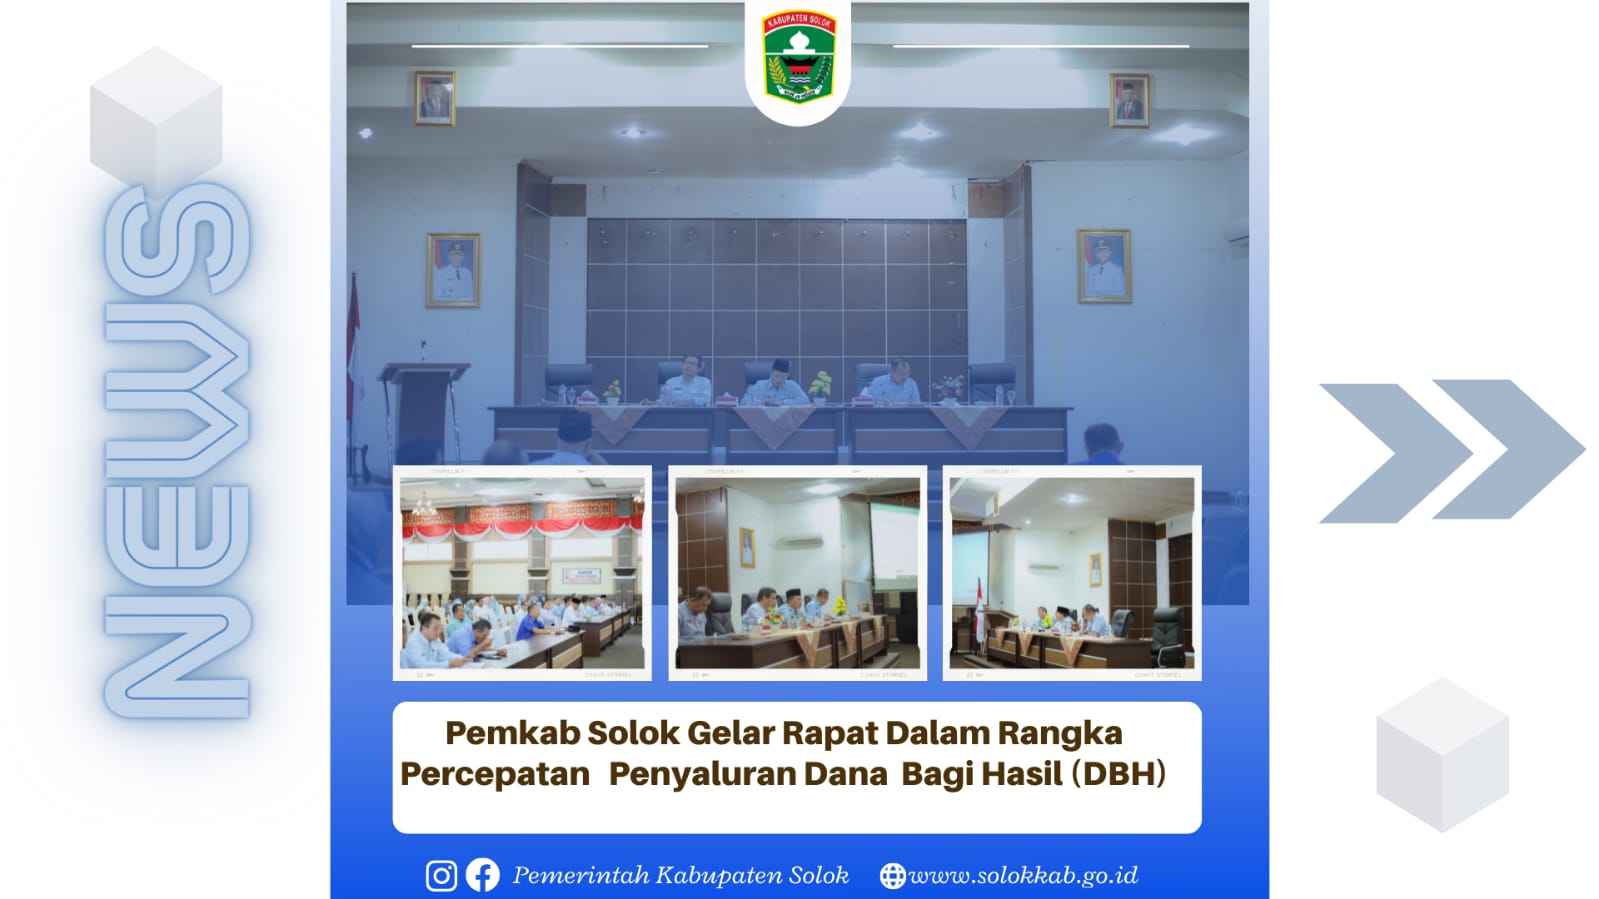 Pemkab Solok Gelar Rapat Dalam Rangka Percepatan Penyaluran Dana Bagi Hasil (DBH).